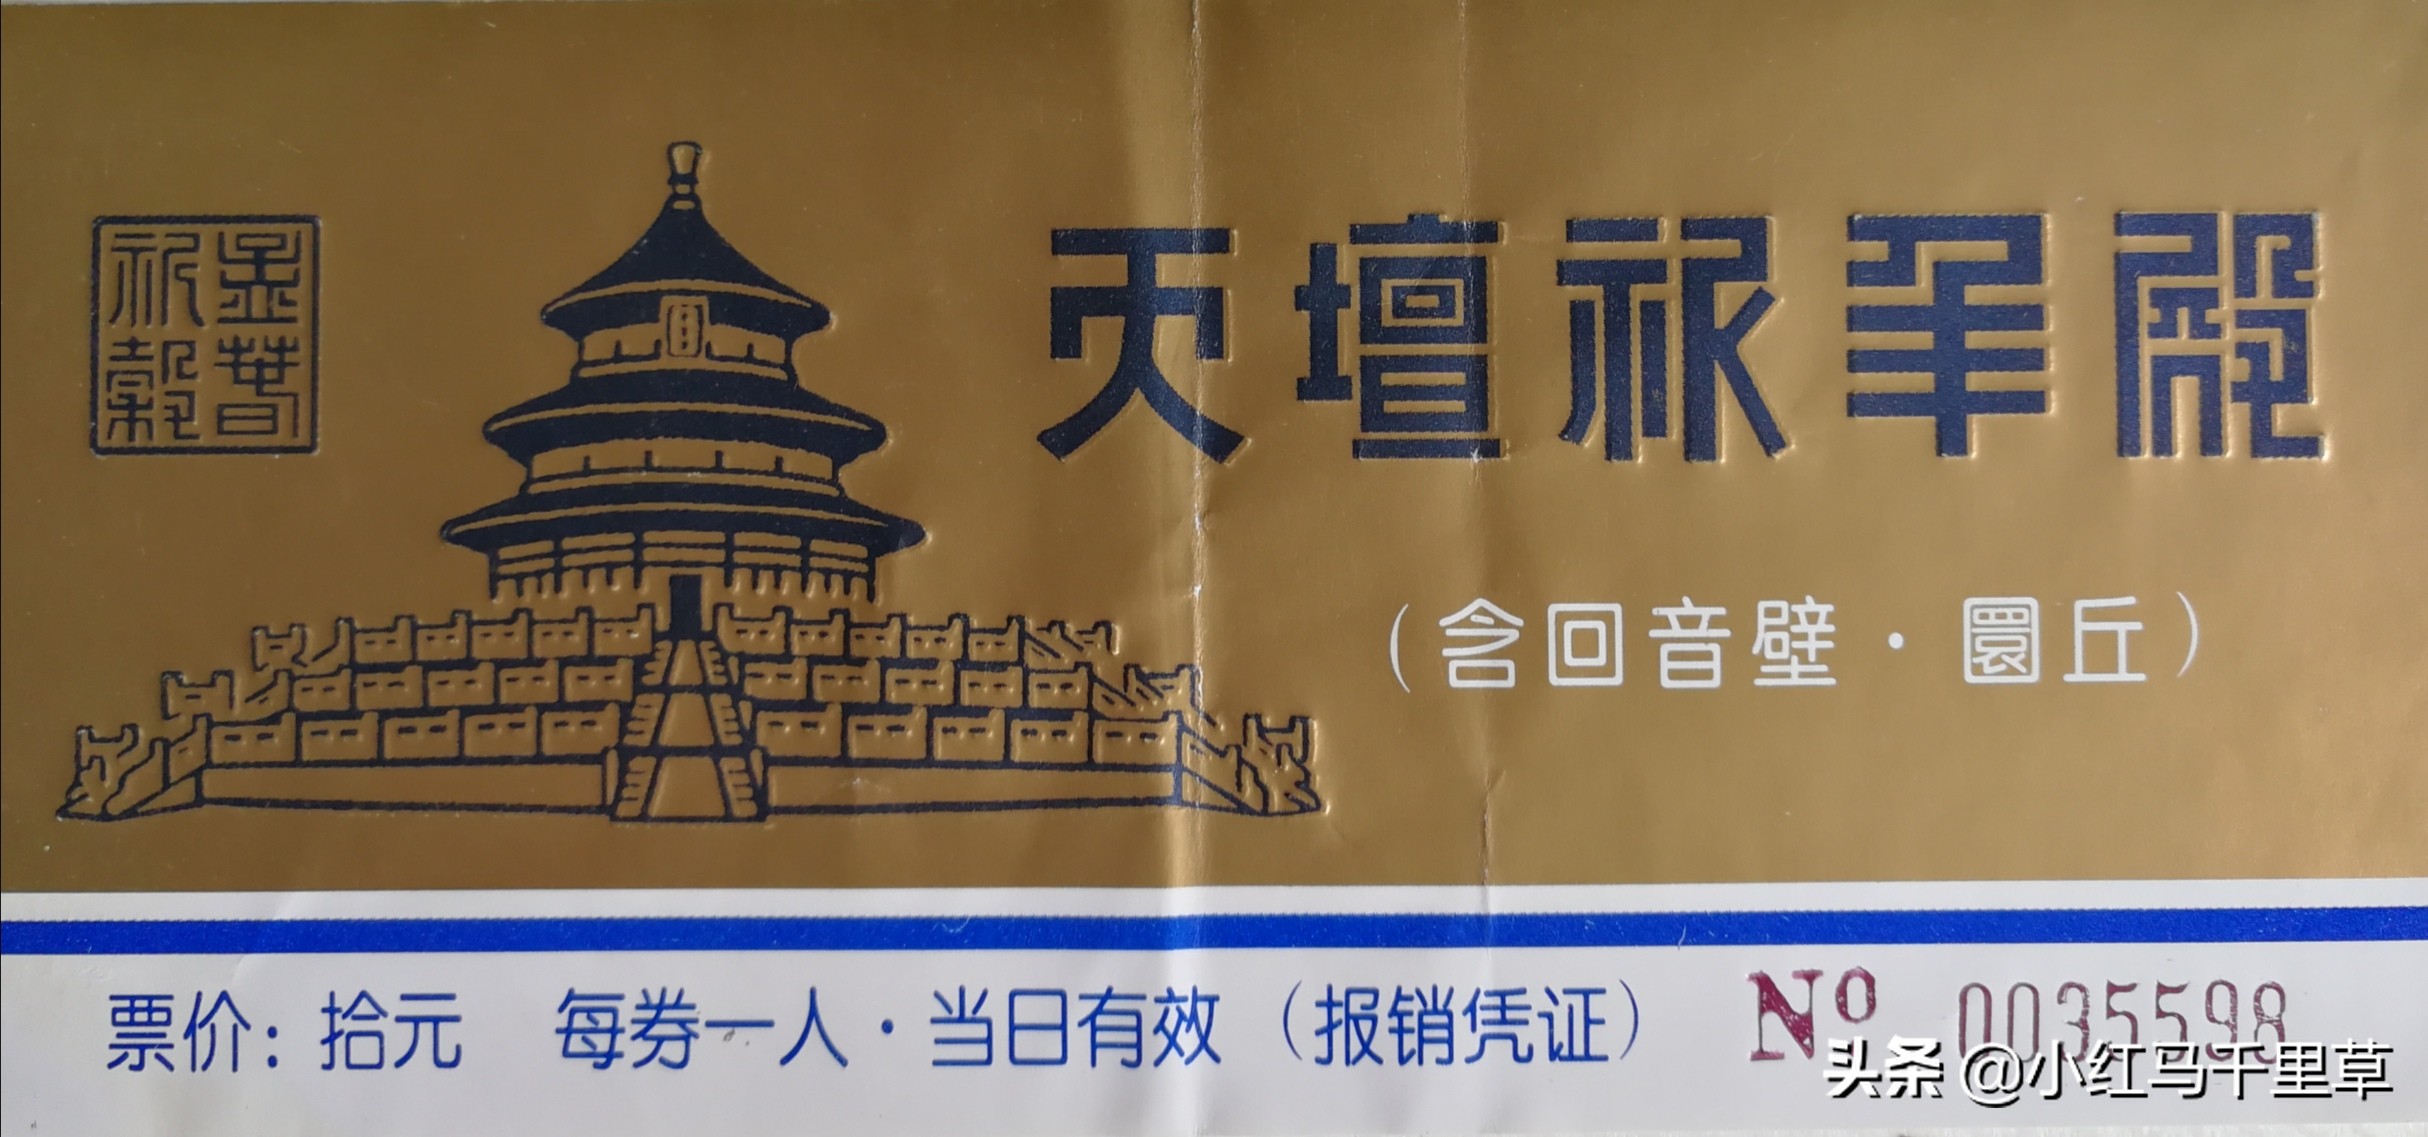 北京、大连、旅顺、威海、青岛之旅